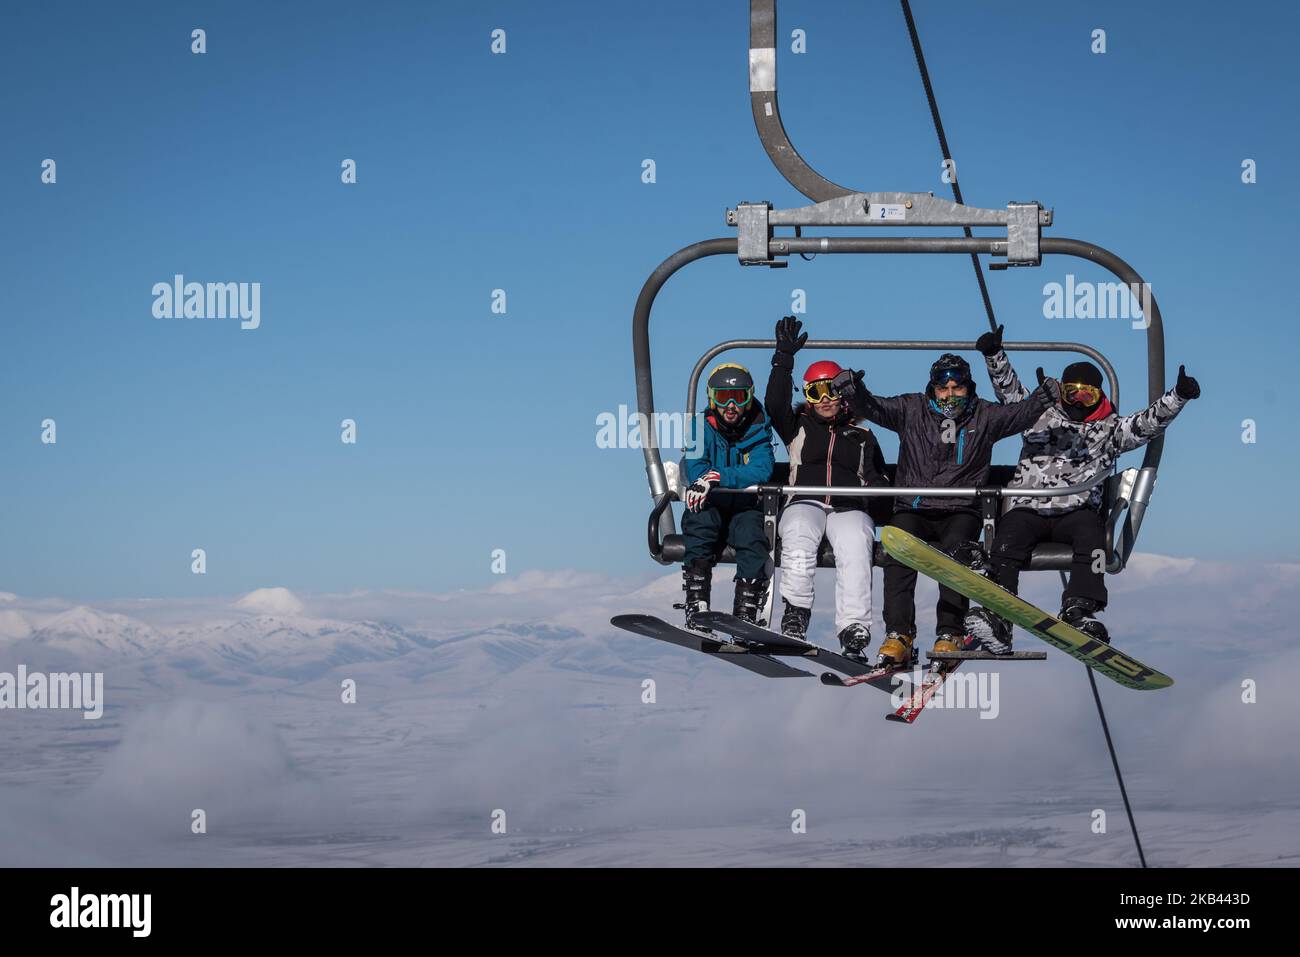 Am 9. Dezember 2018 fahren Wintersportler mit dem Skilift auf das Skigebiet Ejder 3200 Palandoken in den schneebedeckten Bergen südlich von Erzurum, einem beliebten Ski- und Snowboardziel im östlichen Anatolien der Türkei. (Foto von Diego Cupolo/NurPhoto) Stockfoto